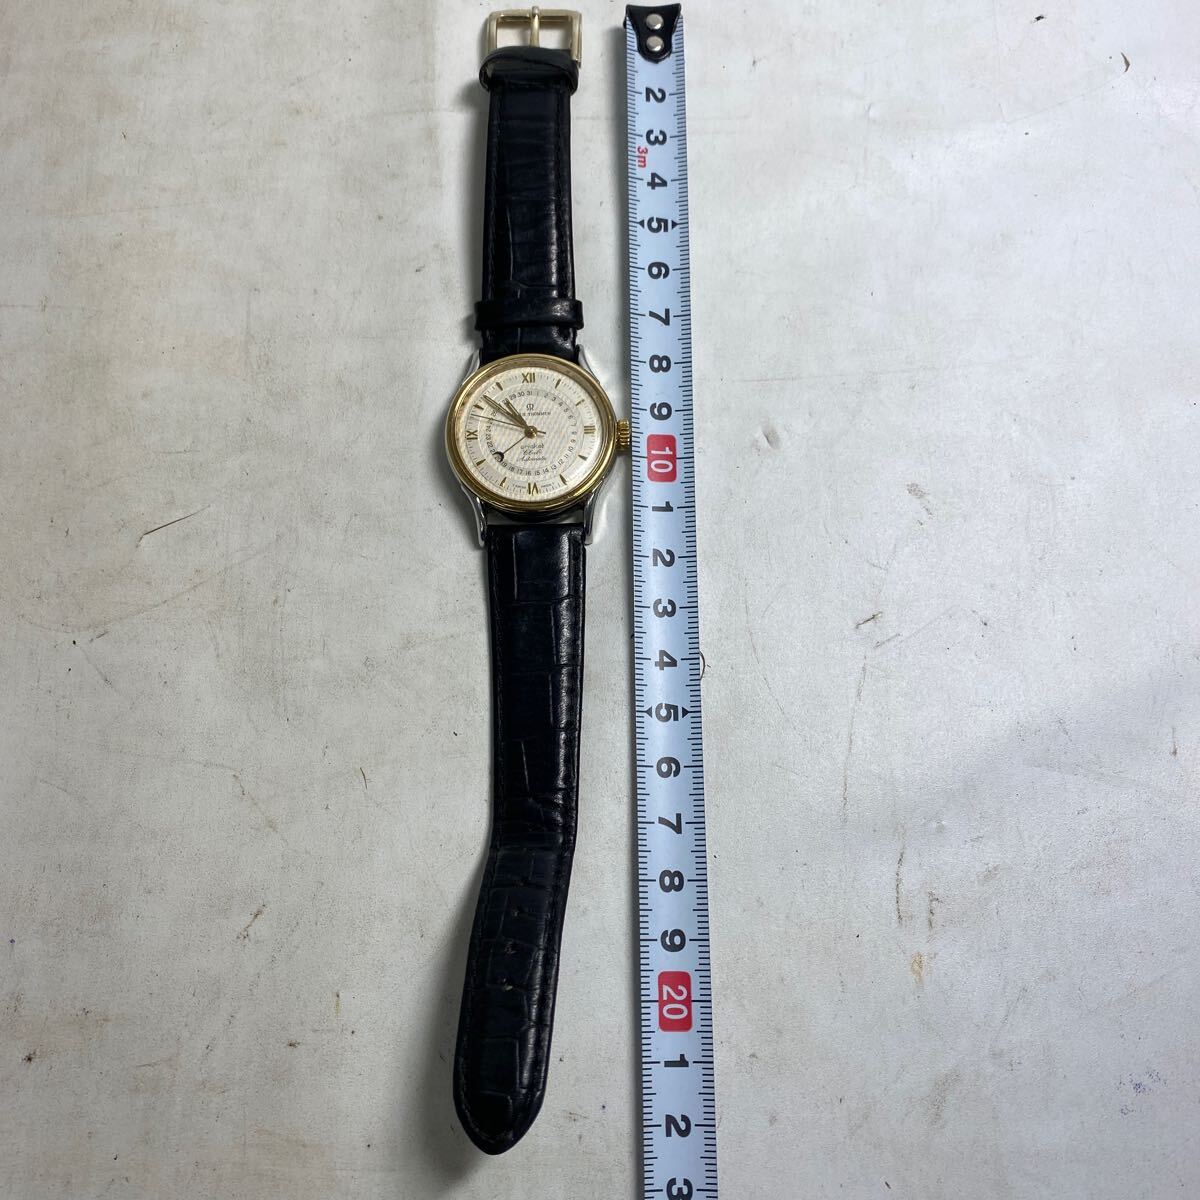 K203-156 редкий Revue Thommen kli Kett Club Automavic 25JEWELS наручные часы No.1279 Швейцария производства высококлассный наручные часы рабочее состояние подтверждено стоимость доставки 520 иен 